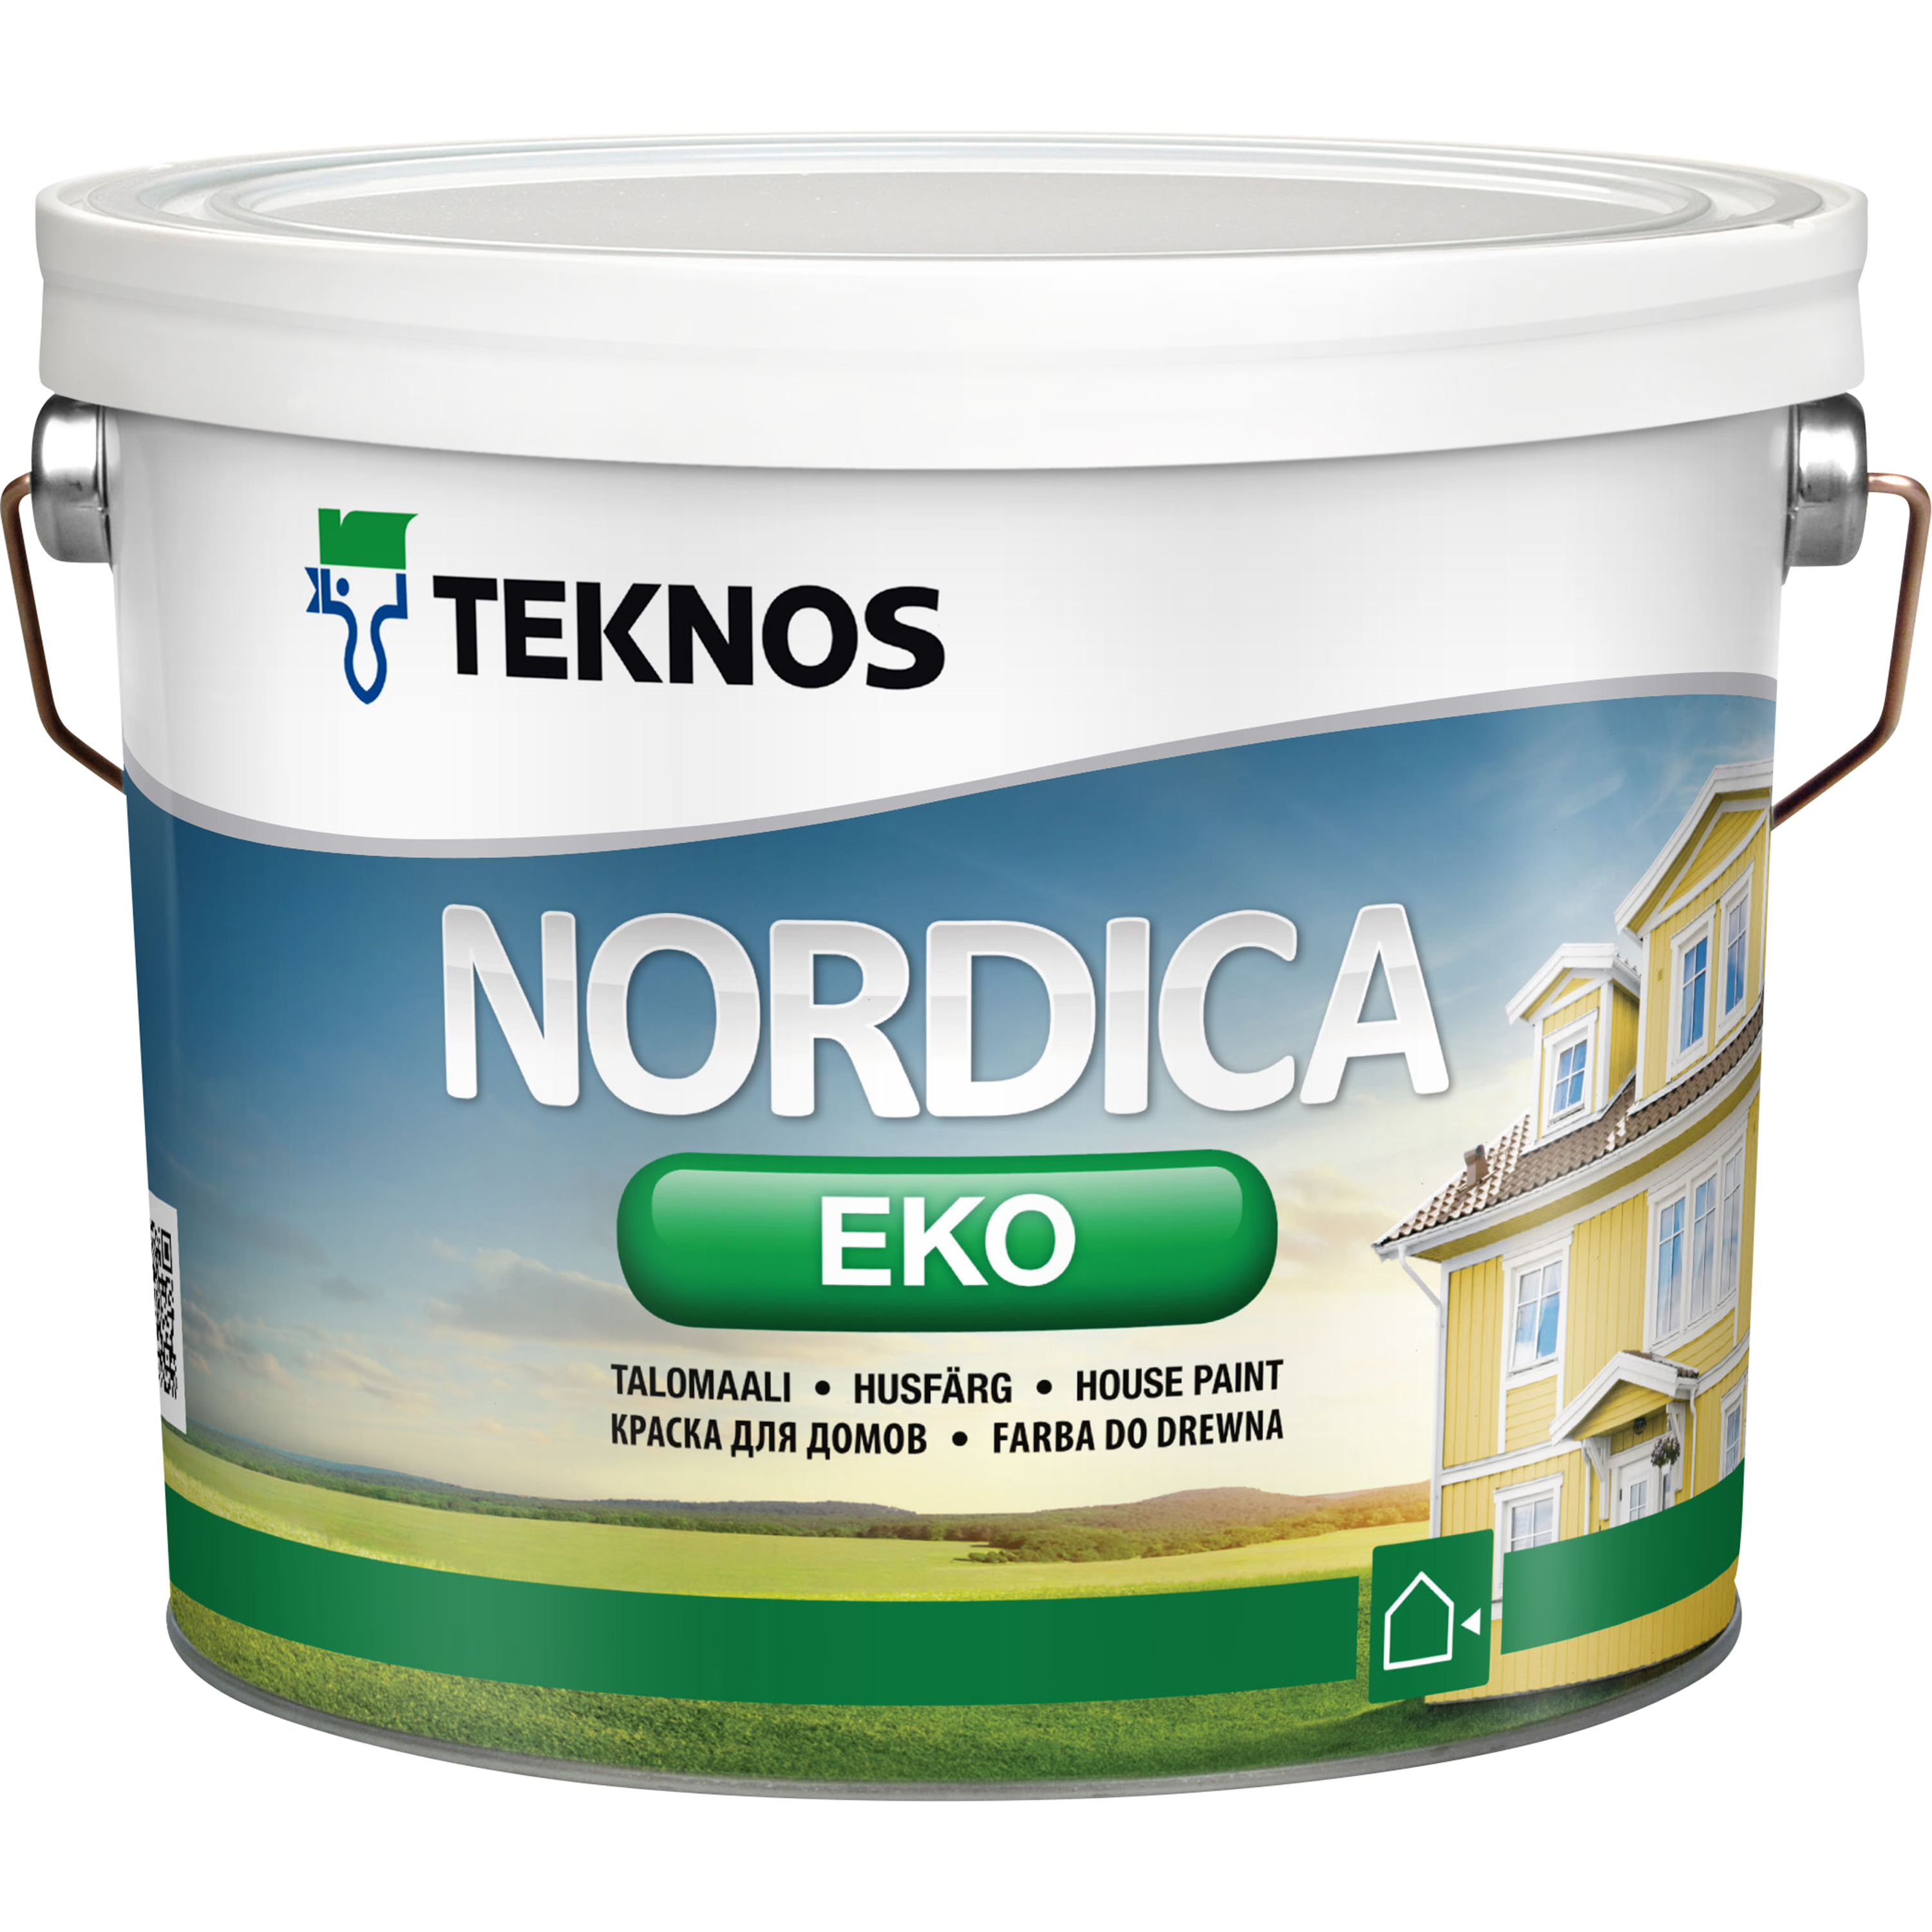 Teknos Husfärg Nordica Eko Bas 3 2,7 l